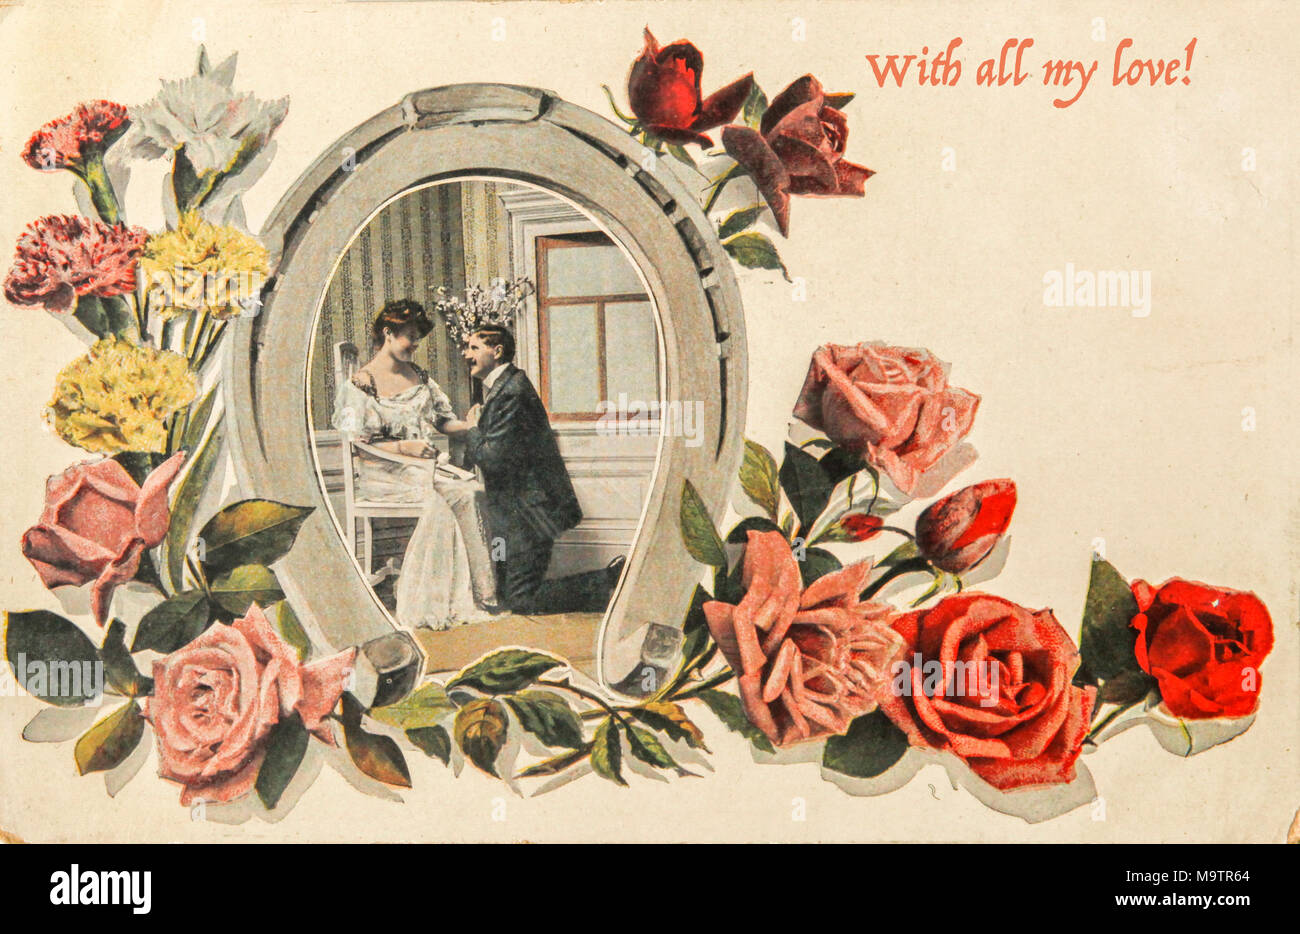 Vintage valentine card del 1915 con amorevole matura in immagine a ferro di cavallo con le rose e il testo "con tutto il mio amore" Foto Stock